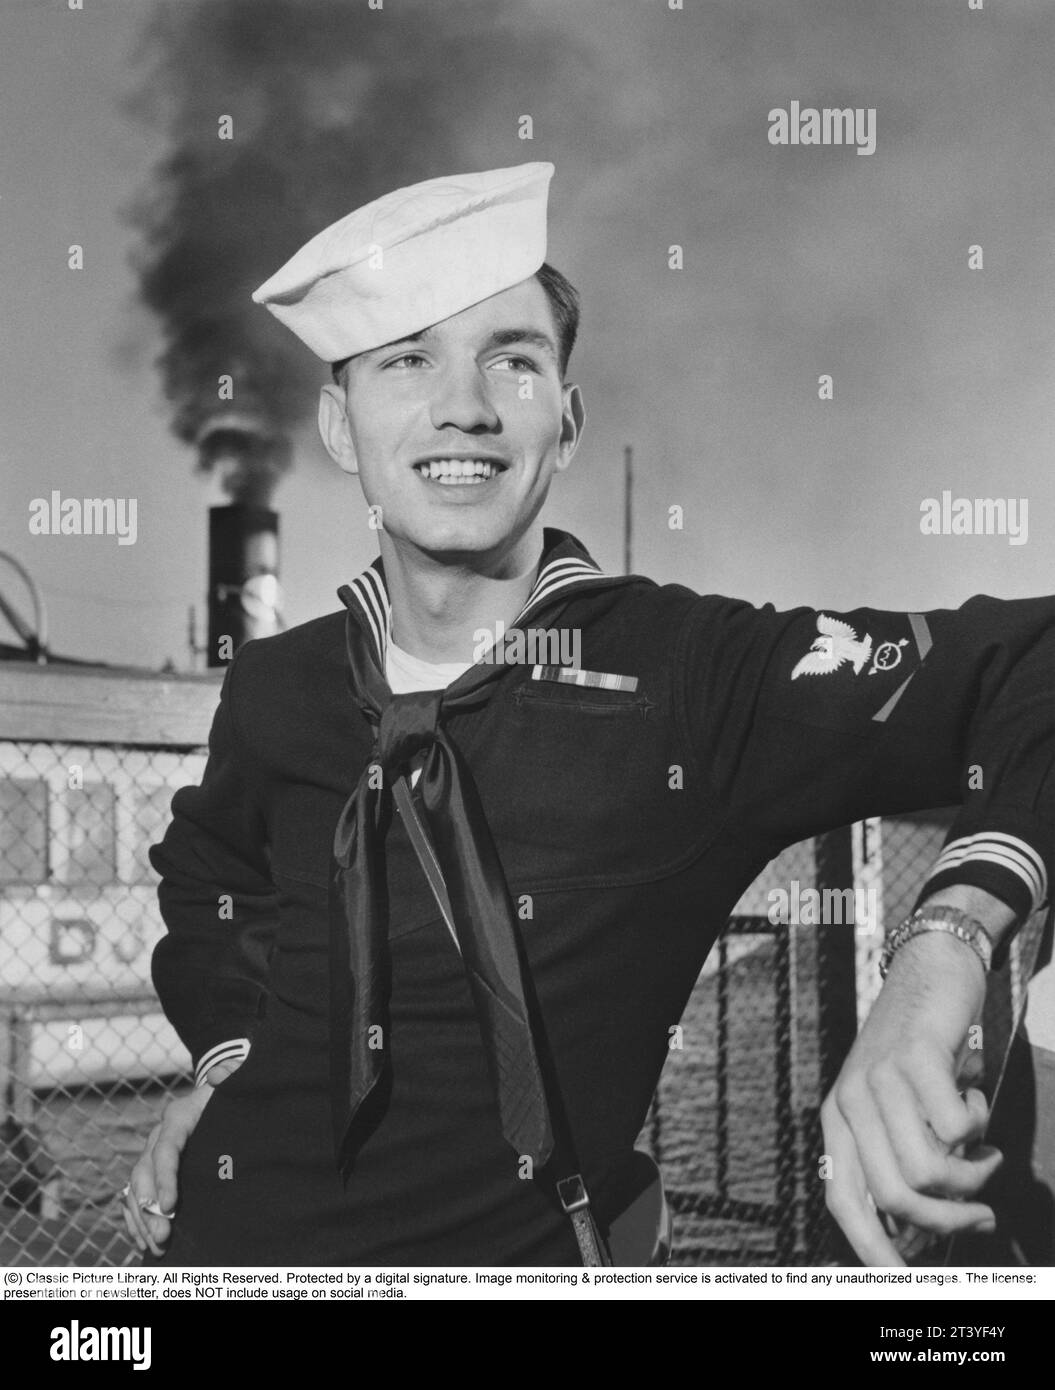 La flota estadounidense visita el 1954 de agosto. Un marinero estadounidense en Estocolmo en relación con el buque USS Baltimore de la Sexta Flota Americana a la que pertenece, está visitando la capital sueca. El nombre del marinero es Ronald Eugene Henn de Warren, Ohio, EE.UU., nacido el 29 de diciembre de 1931, muerto el 26 de diciembre de 2001. 2000.- Está posando para el fotógrafo vistiendo su uniforme y sombrero y con una sonrisa encantadora. Suecia 1954. A cargo de Anders Svahn Foto de stock